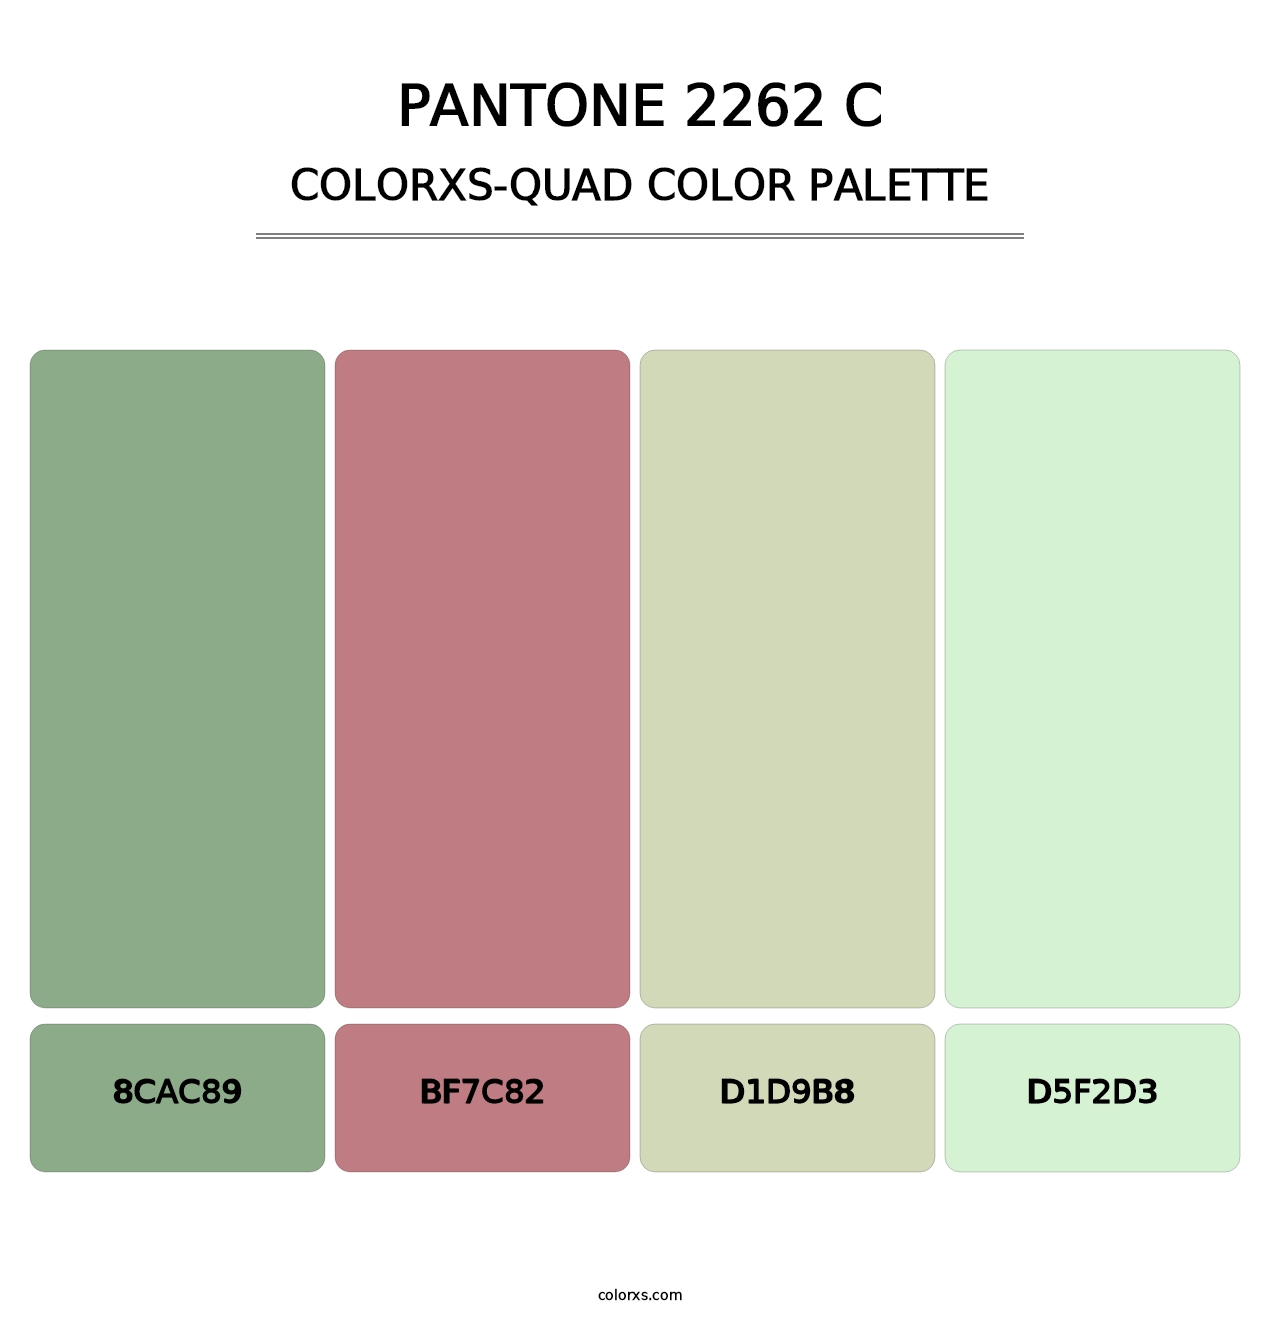 PANTONE 2262 C - Colorxs Quad Palette